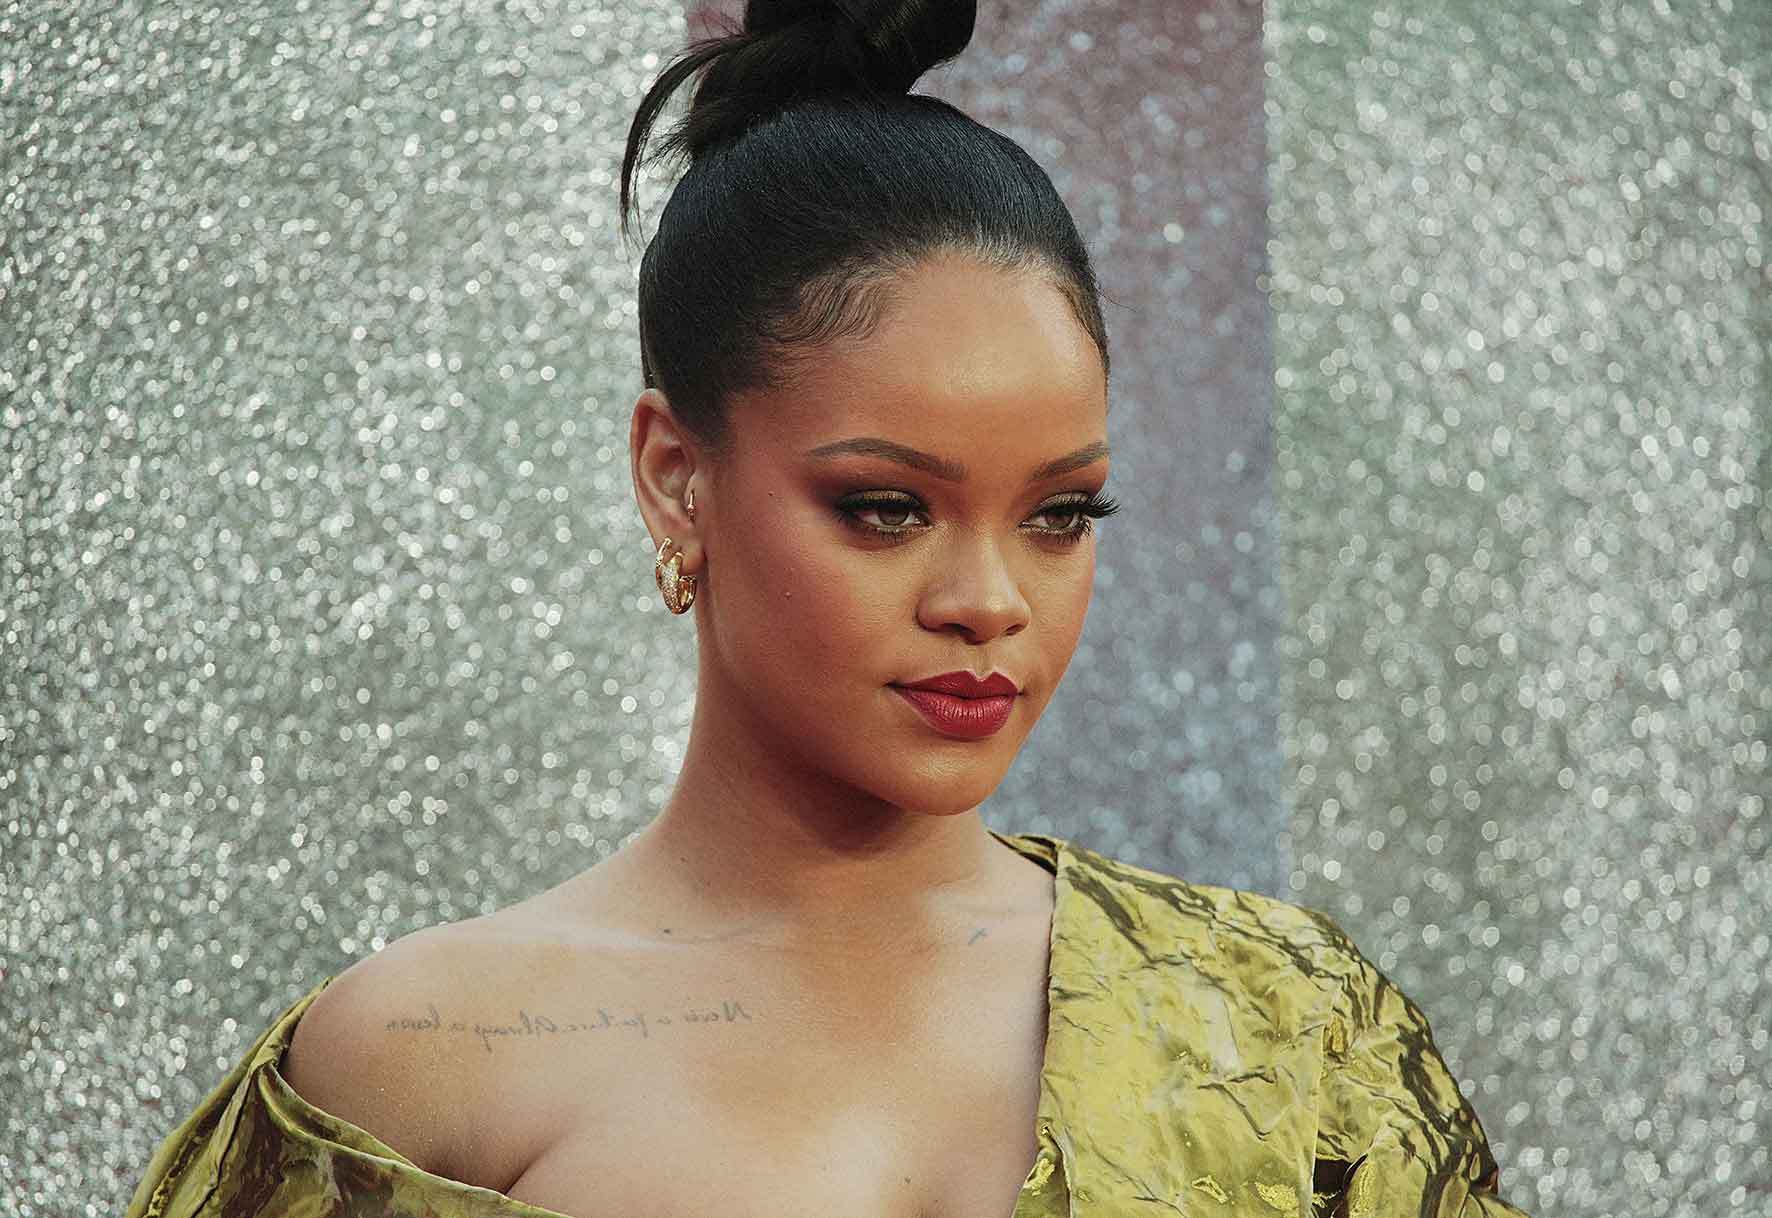 Rihanna aconsegueix milions amb una gravació en una habitació d'hotel feta des de l'edifici de davant